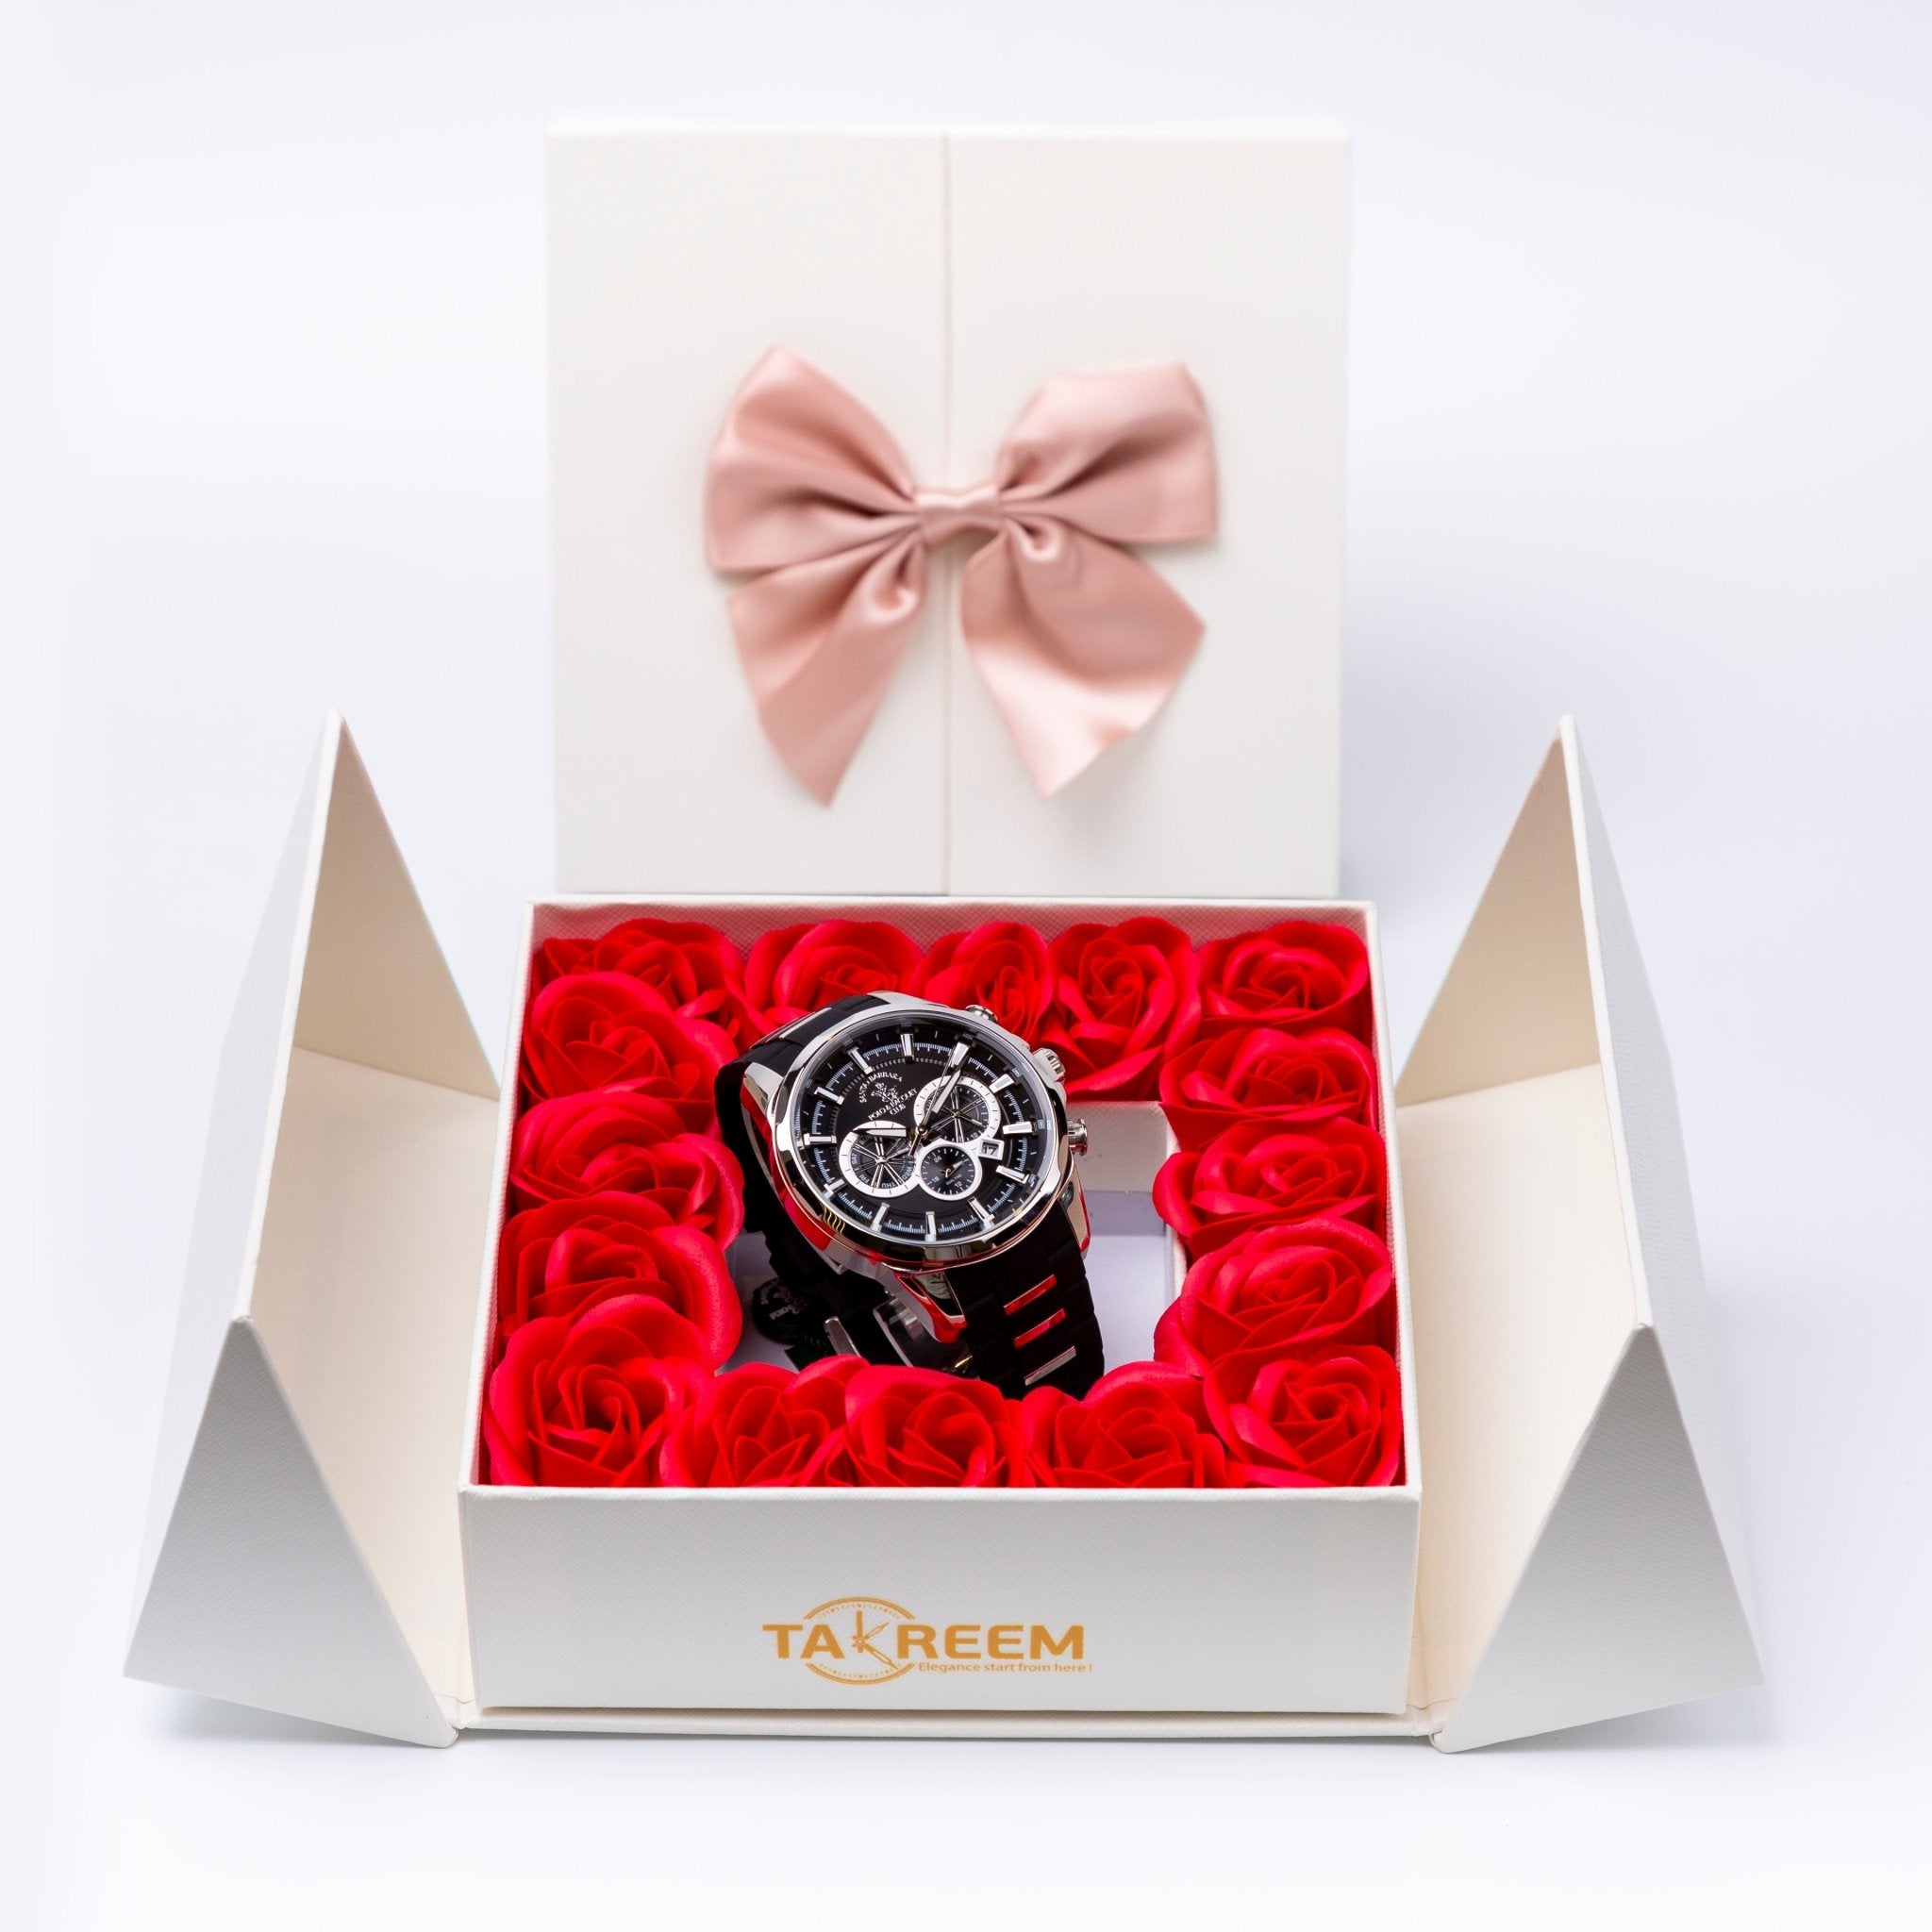 Flower Box - Gift For Men 24 - #shoFlower Box - Gift For Men 24p_name#Flower Box - Gift For Men 24Gift Boxes & TinsTakreemTakreem.joMenWatchFlower Box - Gift For Men 24 - Takreem.jo